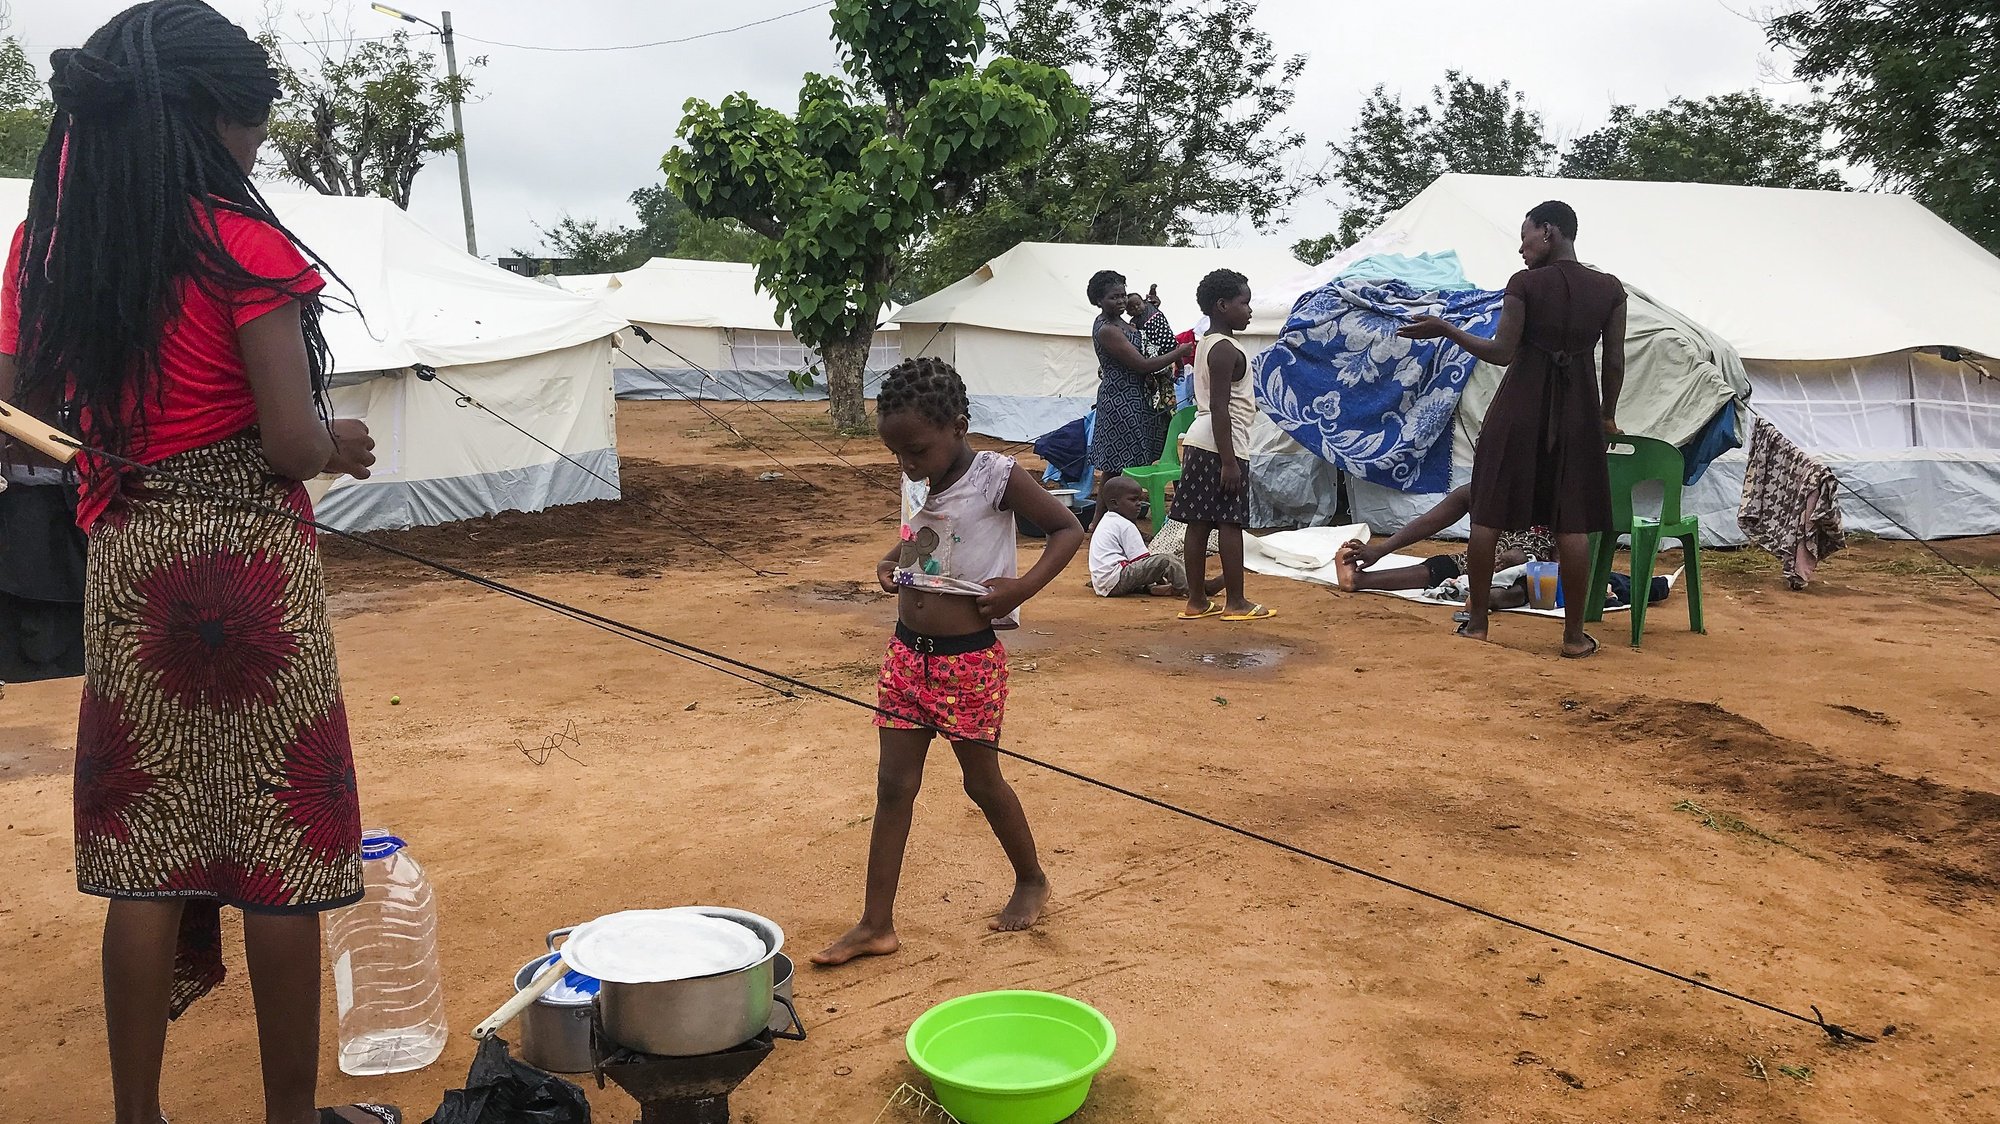 Desalojados da tempestade Ana, num espaço improvisado com tendas disponibilizadas pela Cruz Vermelha, no pátio do Instituto Industrial de Tete, Moçambique, 28 de janeiro de 2022. A tempestade Ana já fez, pelo menos, 20 mortos em Moçambique, seis dos quais em Tete, num balanço ainda por terminar. (ACOMPANHA TEXTO DA LUSA). ANDRÉ CATUEIRA/LUSA